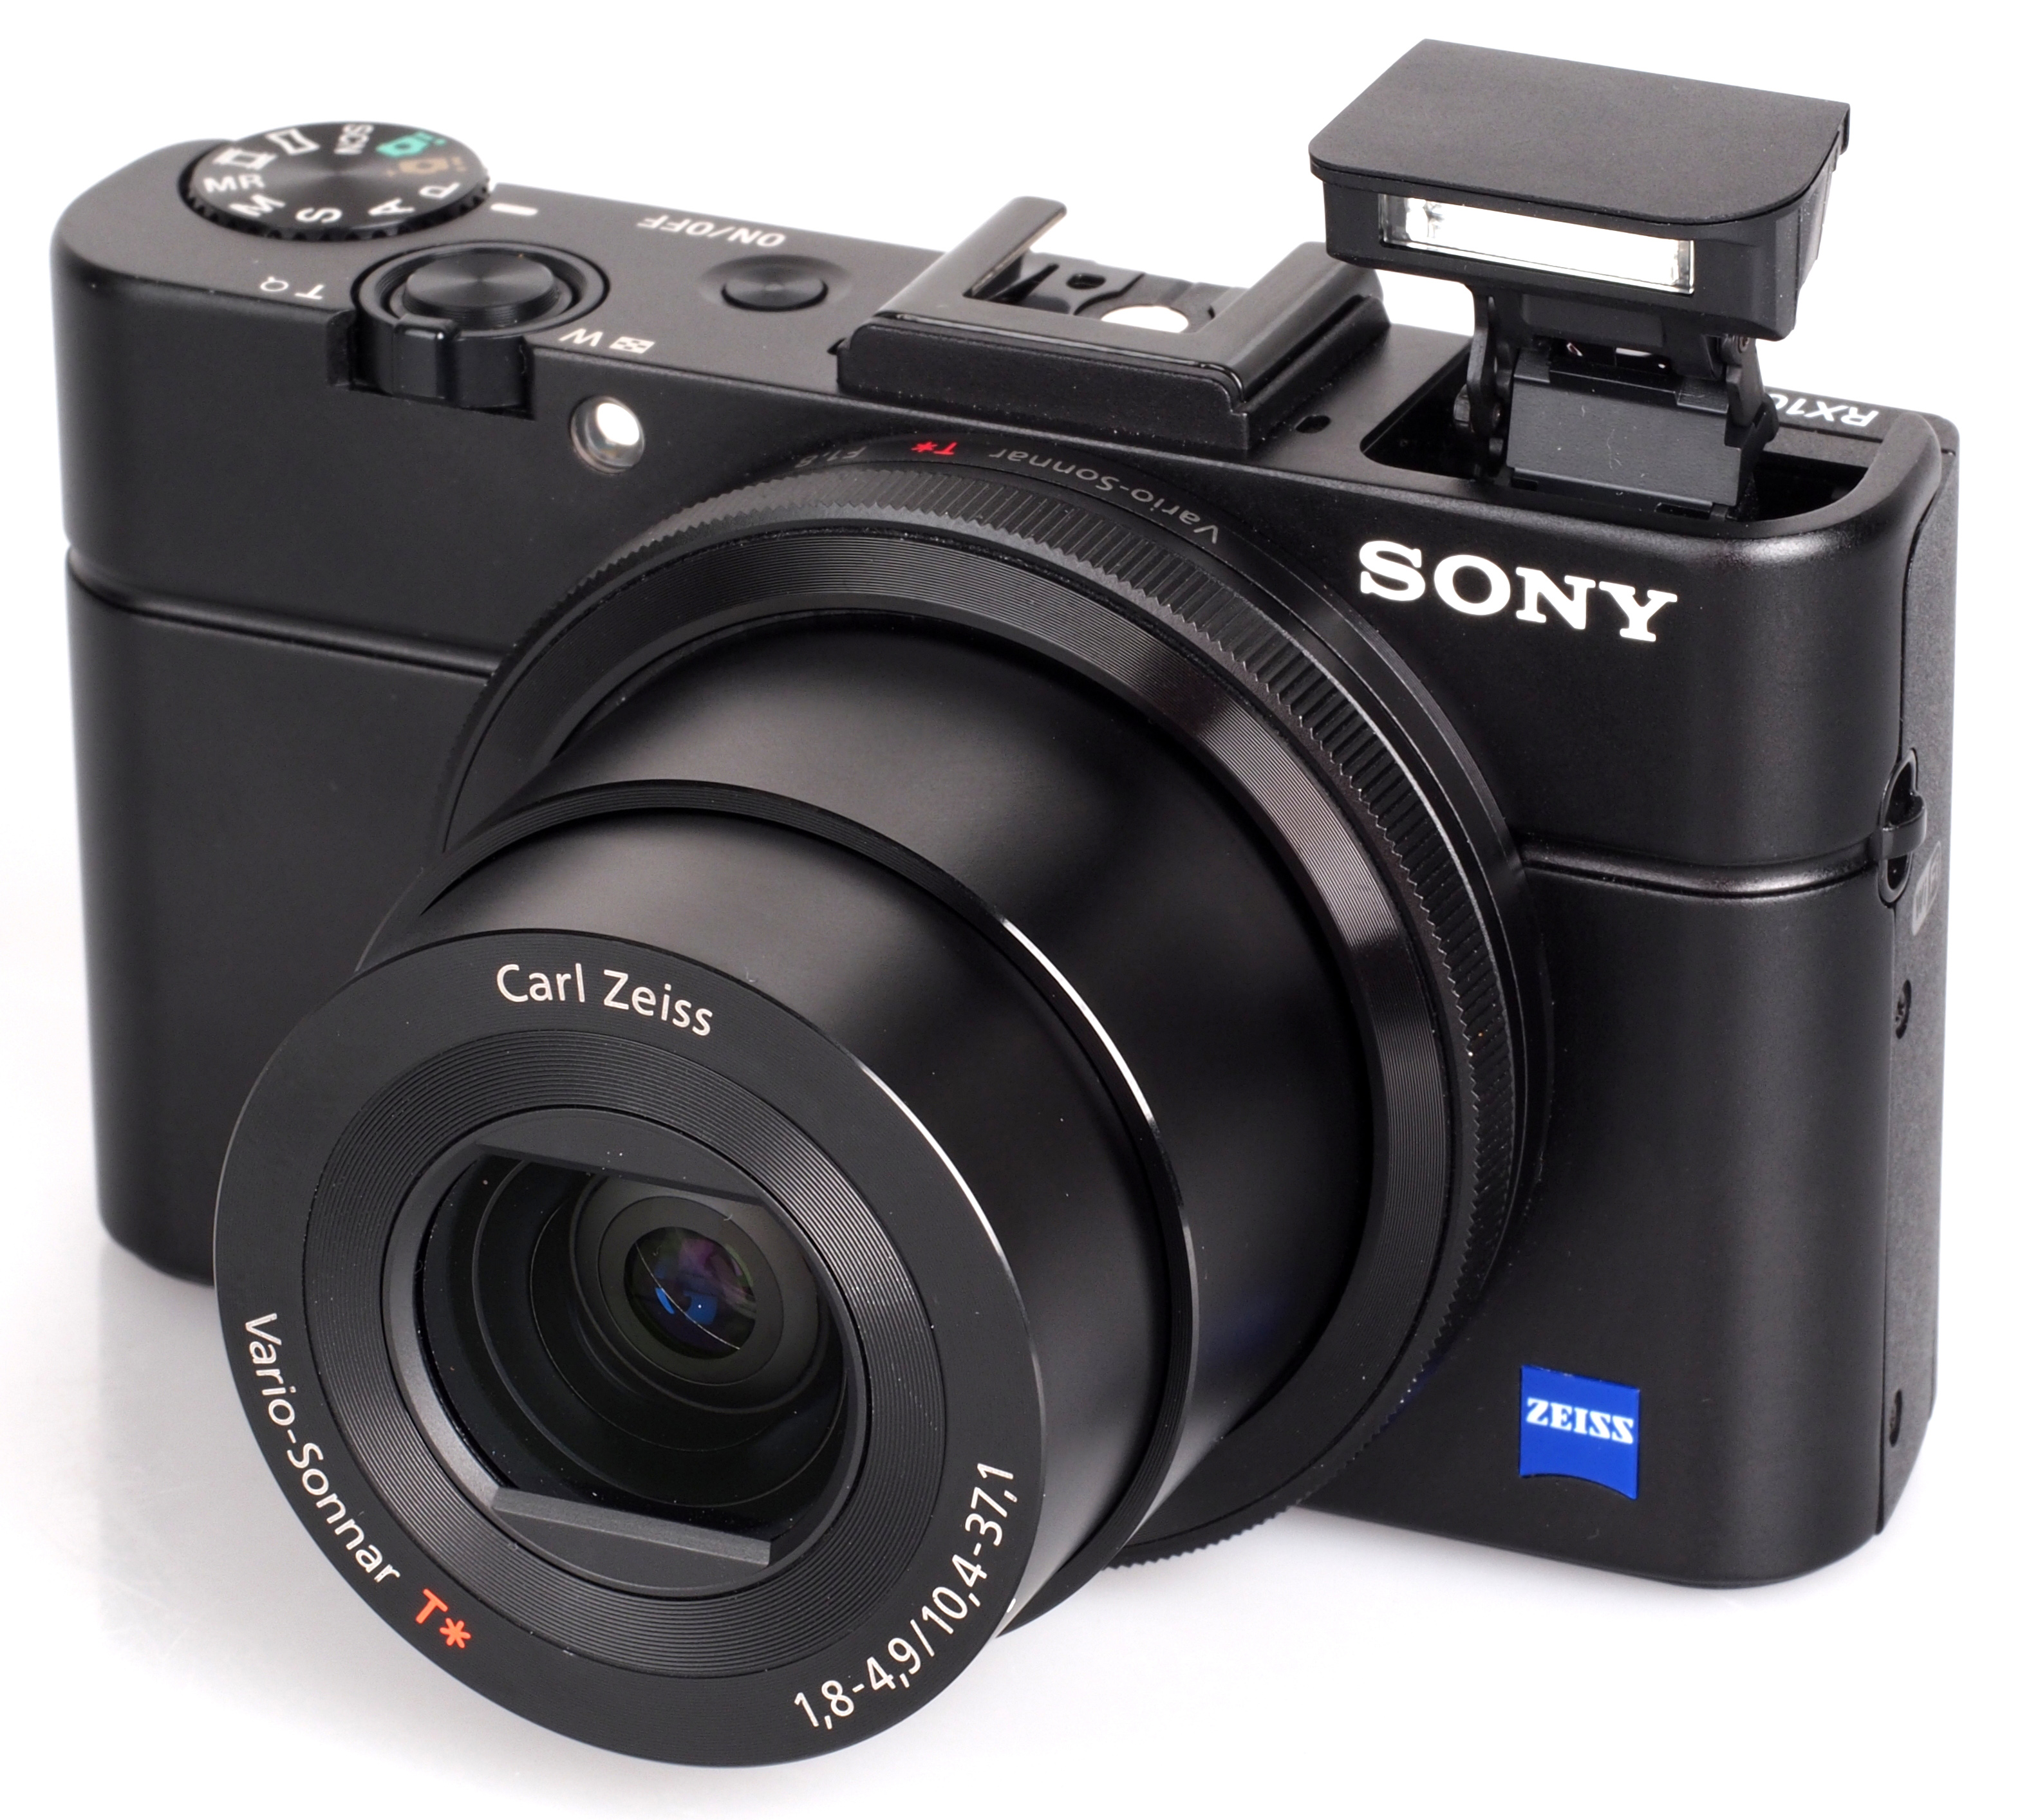 Cybershot RX100 III thuộc dòng máy ảnh du lịch cao cấp của Sony